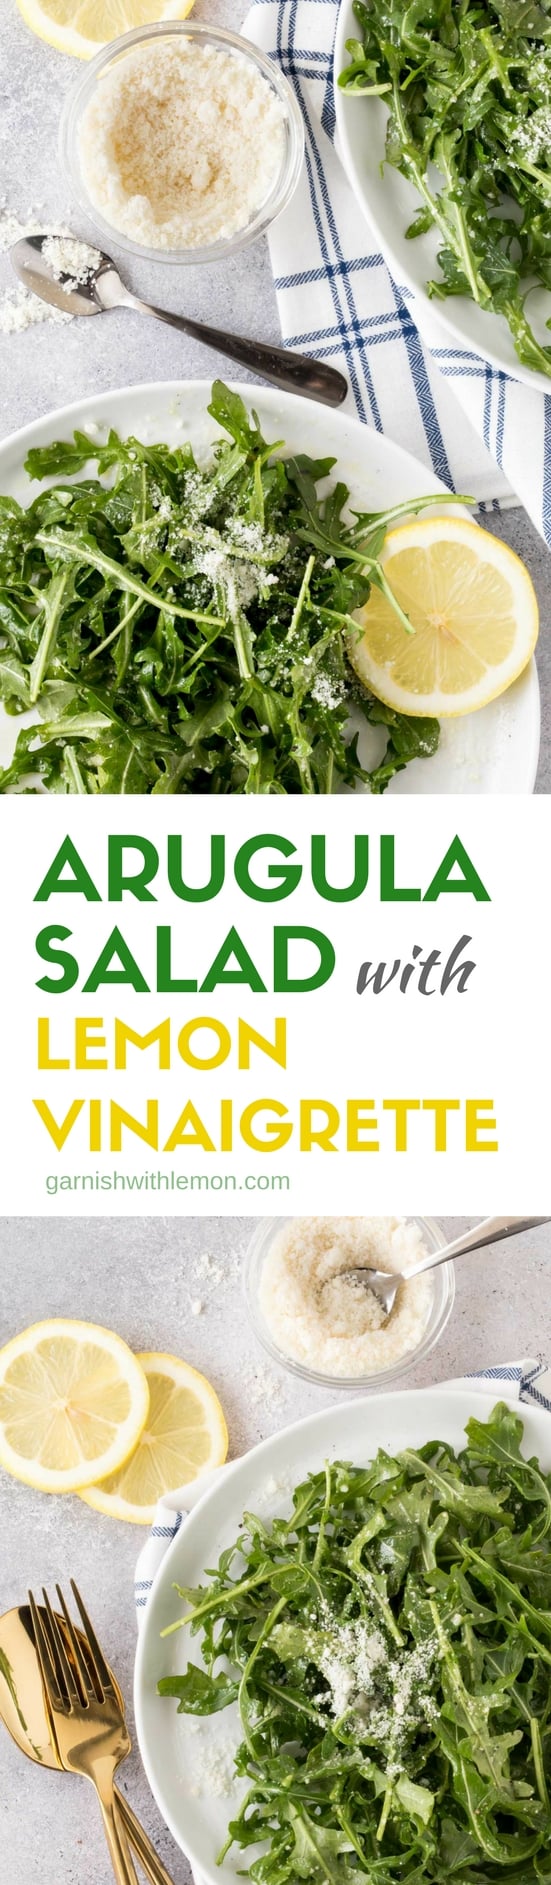 Arugula Salad Lemon Vinaigrette Recipe